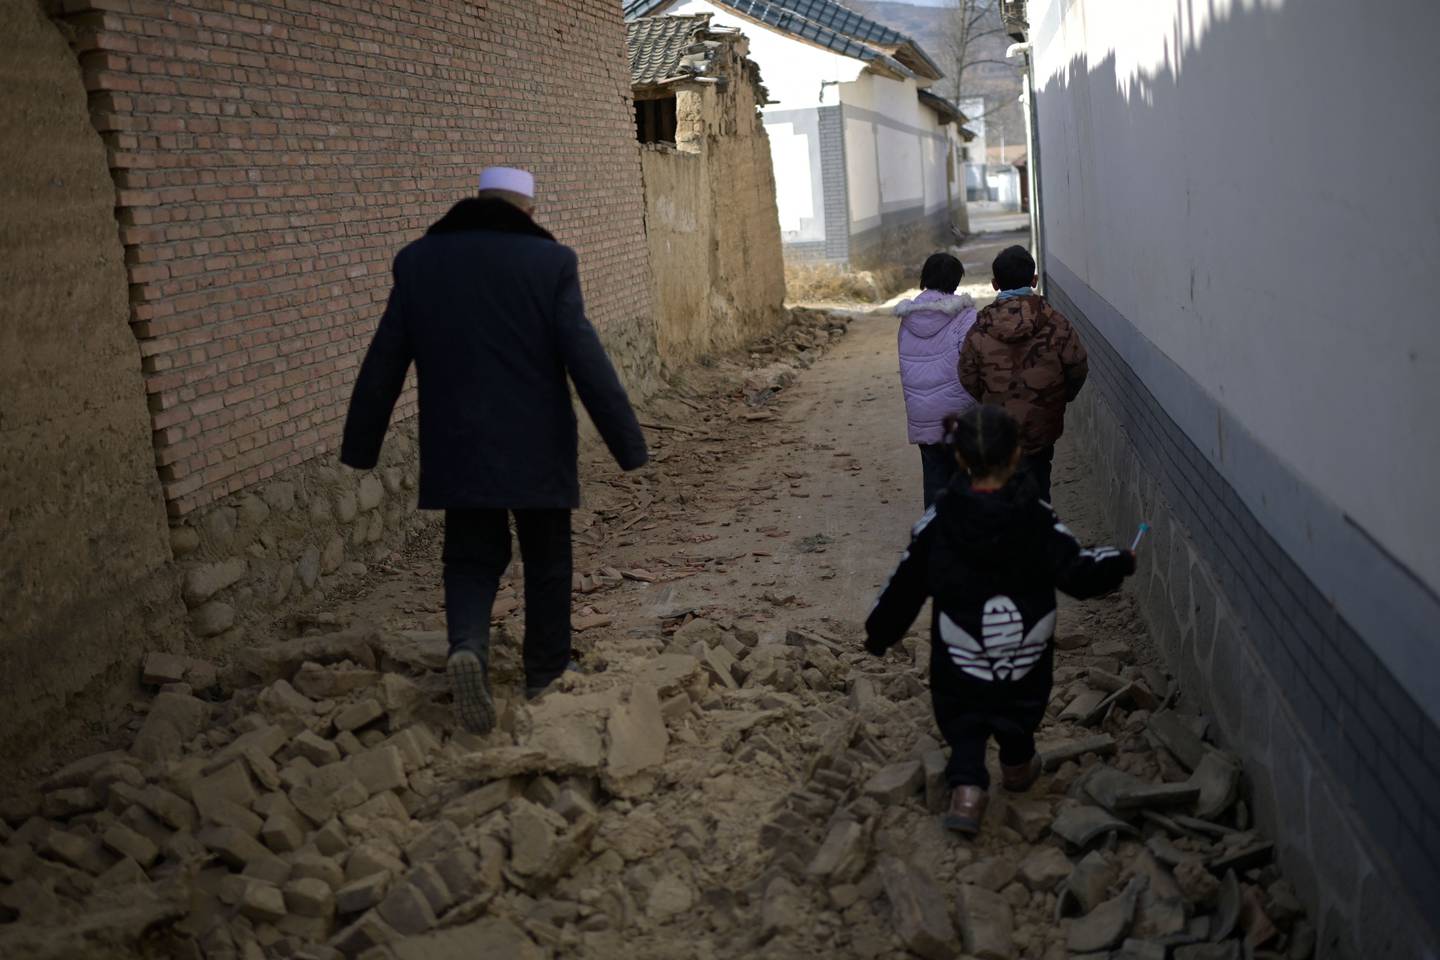 La gente camina entre los escombros después de un terremoto en la aldea de Gaoli en el condado de Jishishan, en la provincia de Gansu, en el noroeste de China, esto sucedió el pasado mes de diciembre.. Los sobrevivientes del terremoto más mortífero de China en años se apiñaron en tiendas de campaña de ayuda el miércoles después de que las temperaturas nocturnas cayeran muy por debajo de cero, con el número de muertos aumentando. al 131. (Foto de PEDRO PARDO / AFP)